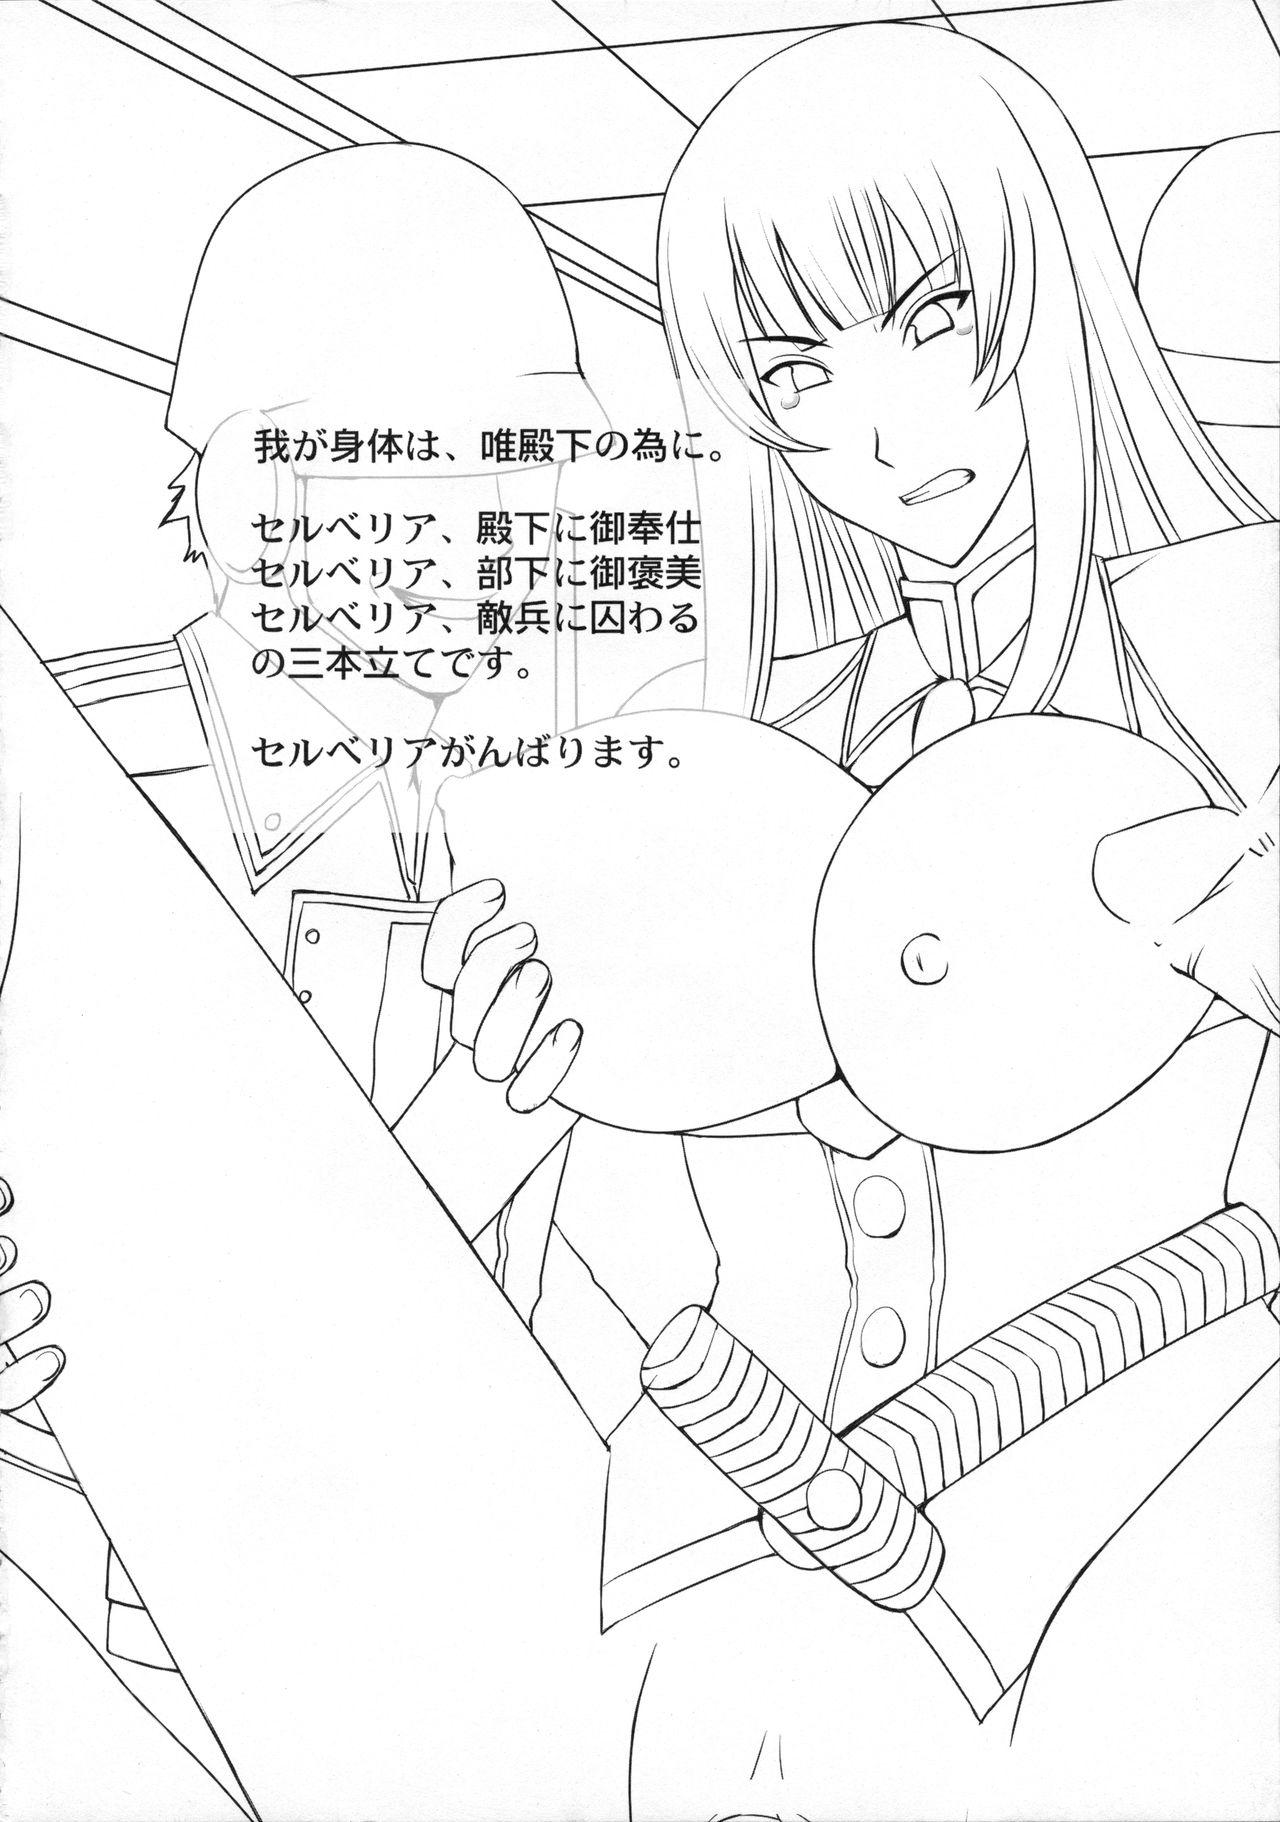 Butt Plug Waga Shintai wa, Tada Denka no Tame ni. - Valkyria chronicles Pickup - Page 3